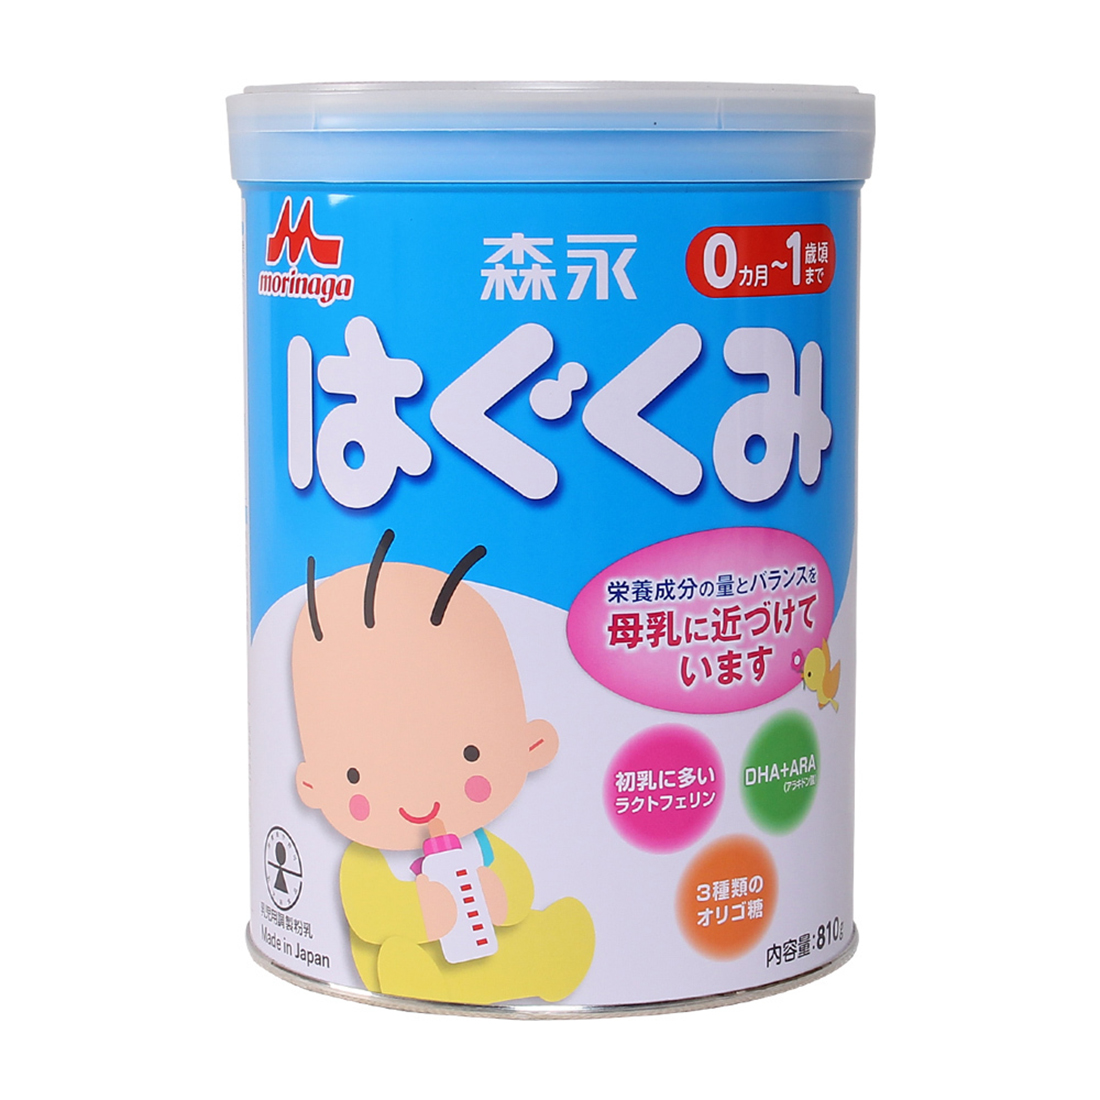 Những loại sữa tăng cân tốt nhất cho bé-morinaga